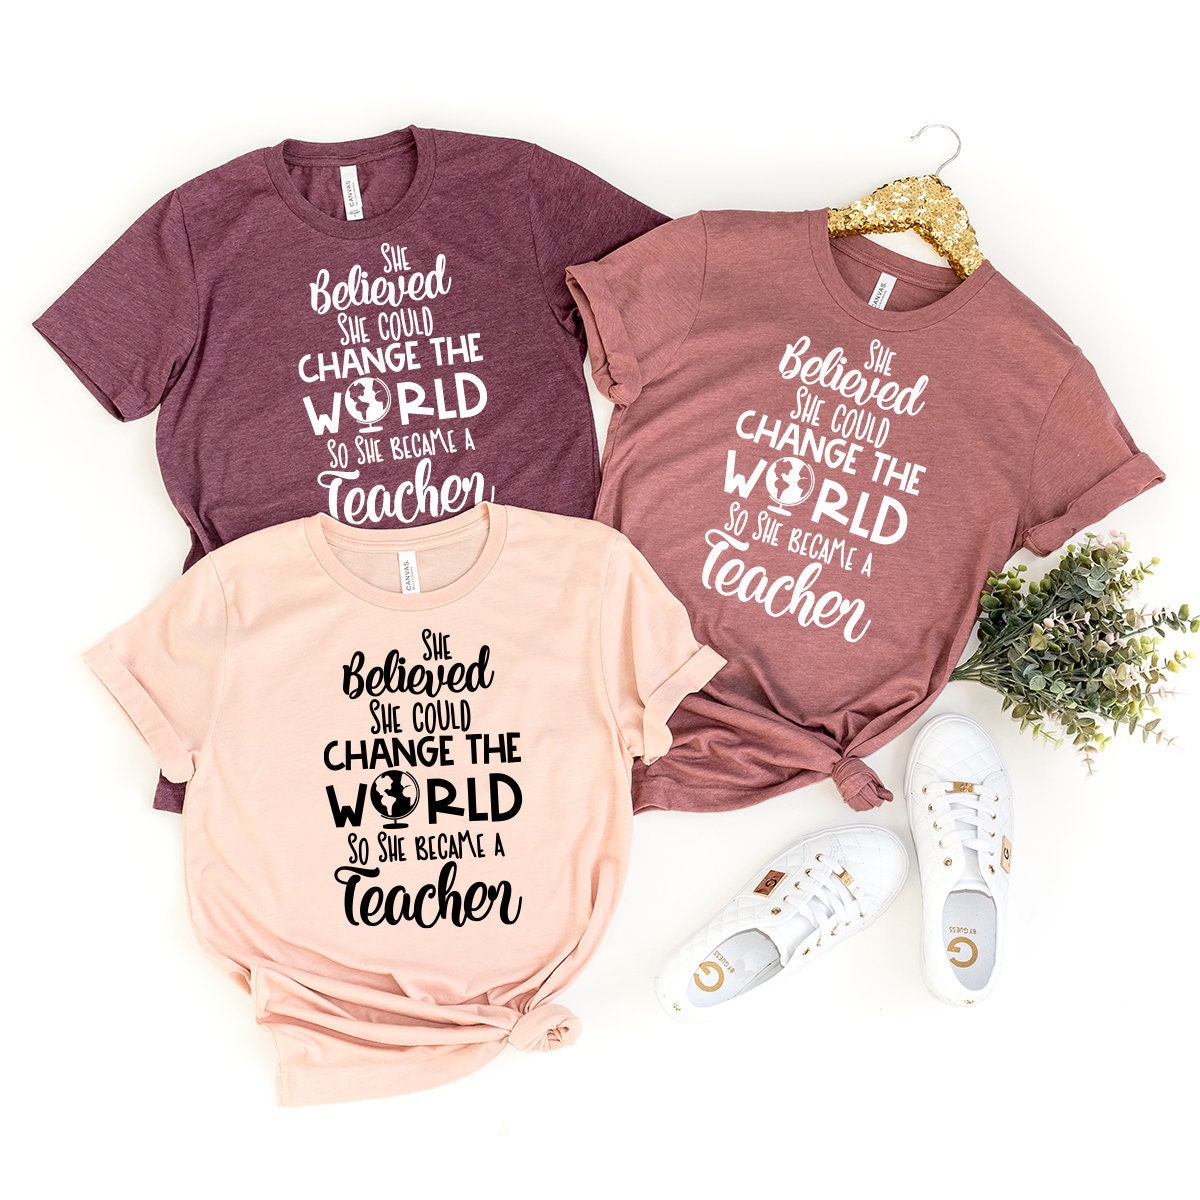 Teachers Shirt, Woman Teachers Tee, Teachers T-Shirt, Cute Teacher Shirt, She Believed She Could Change The World So She Became A Teacher - Fastdeliverytees.com